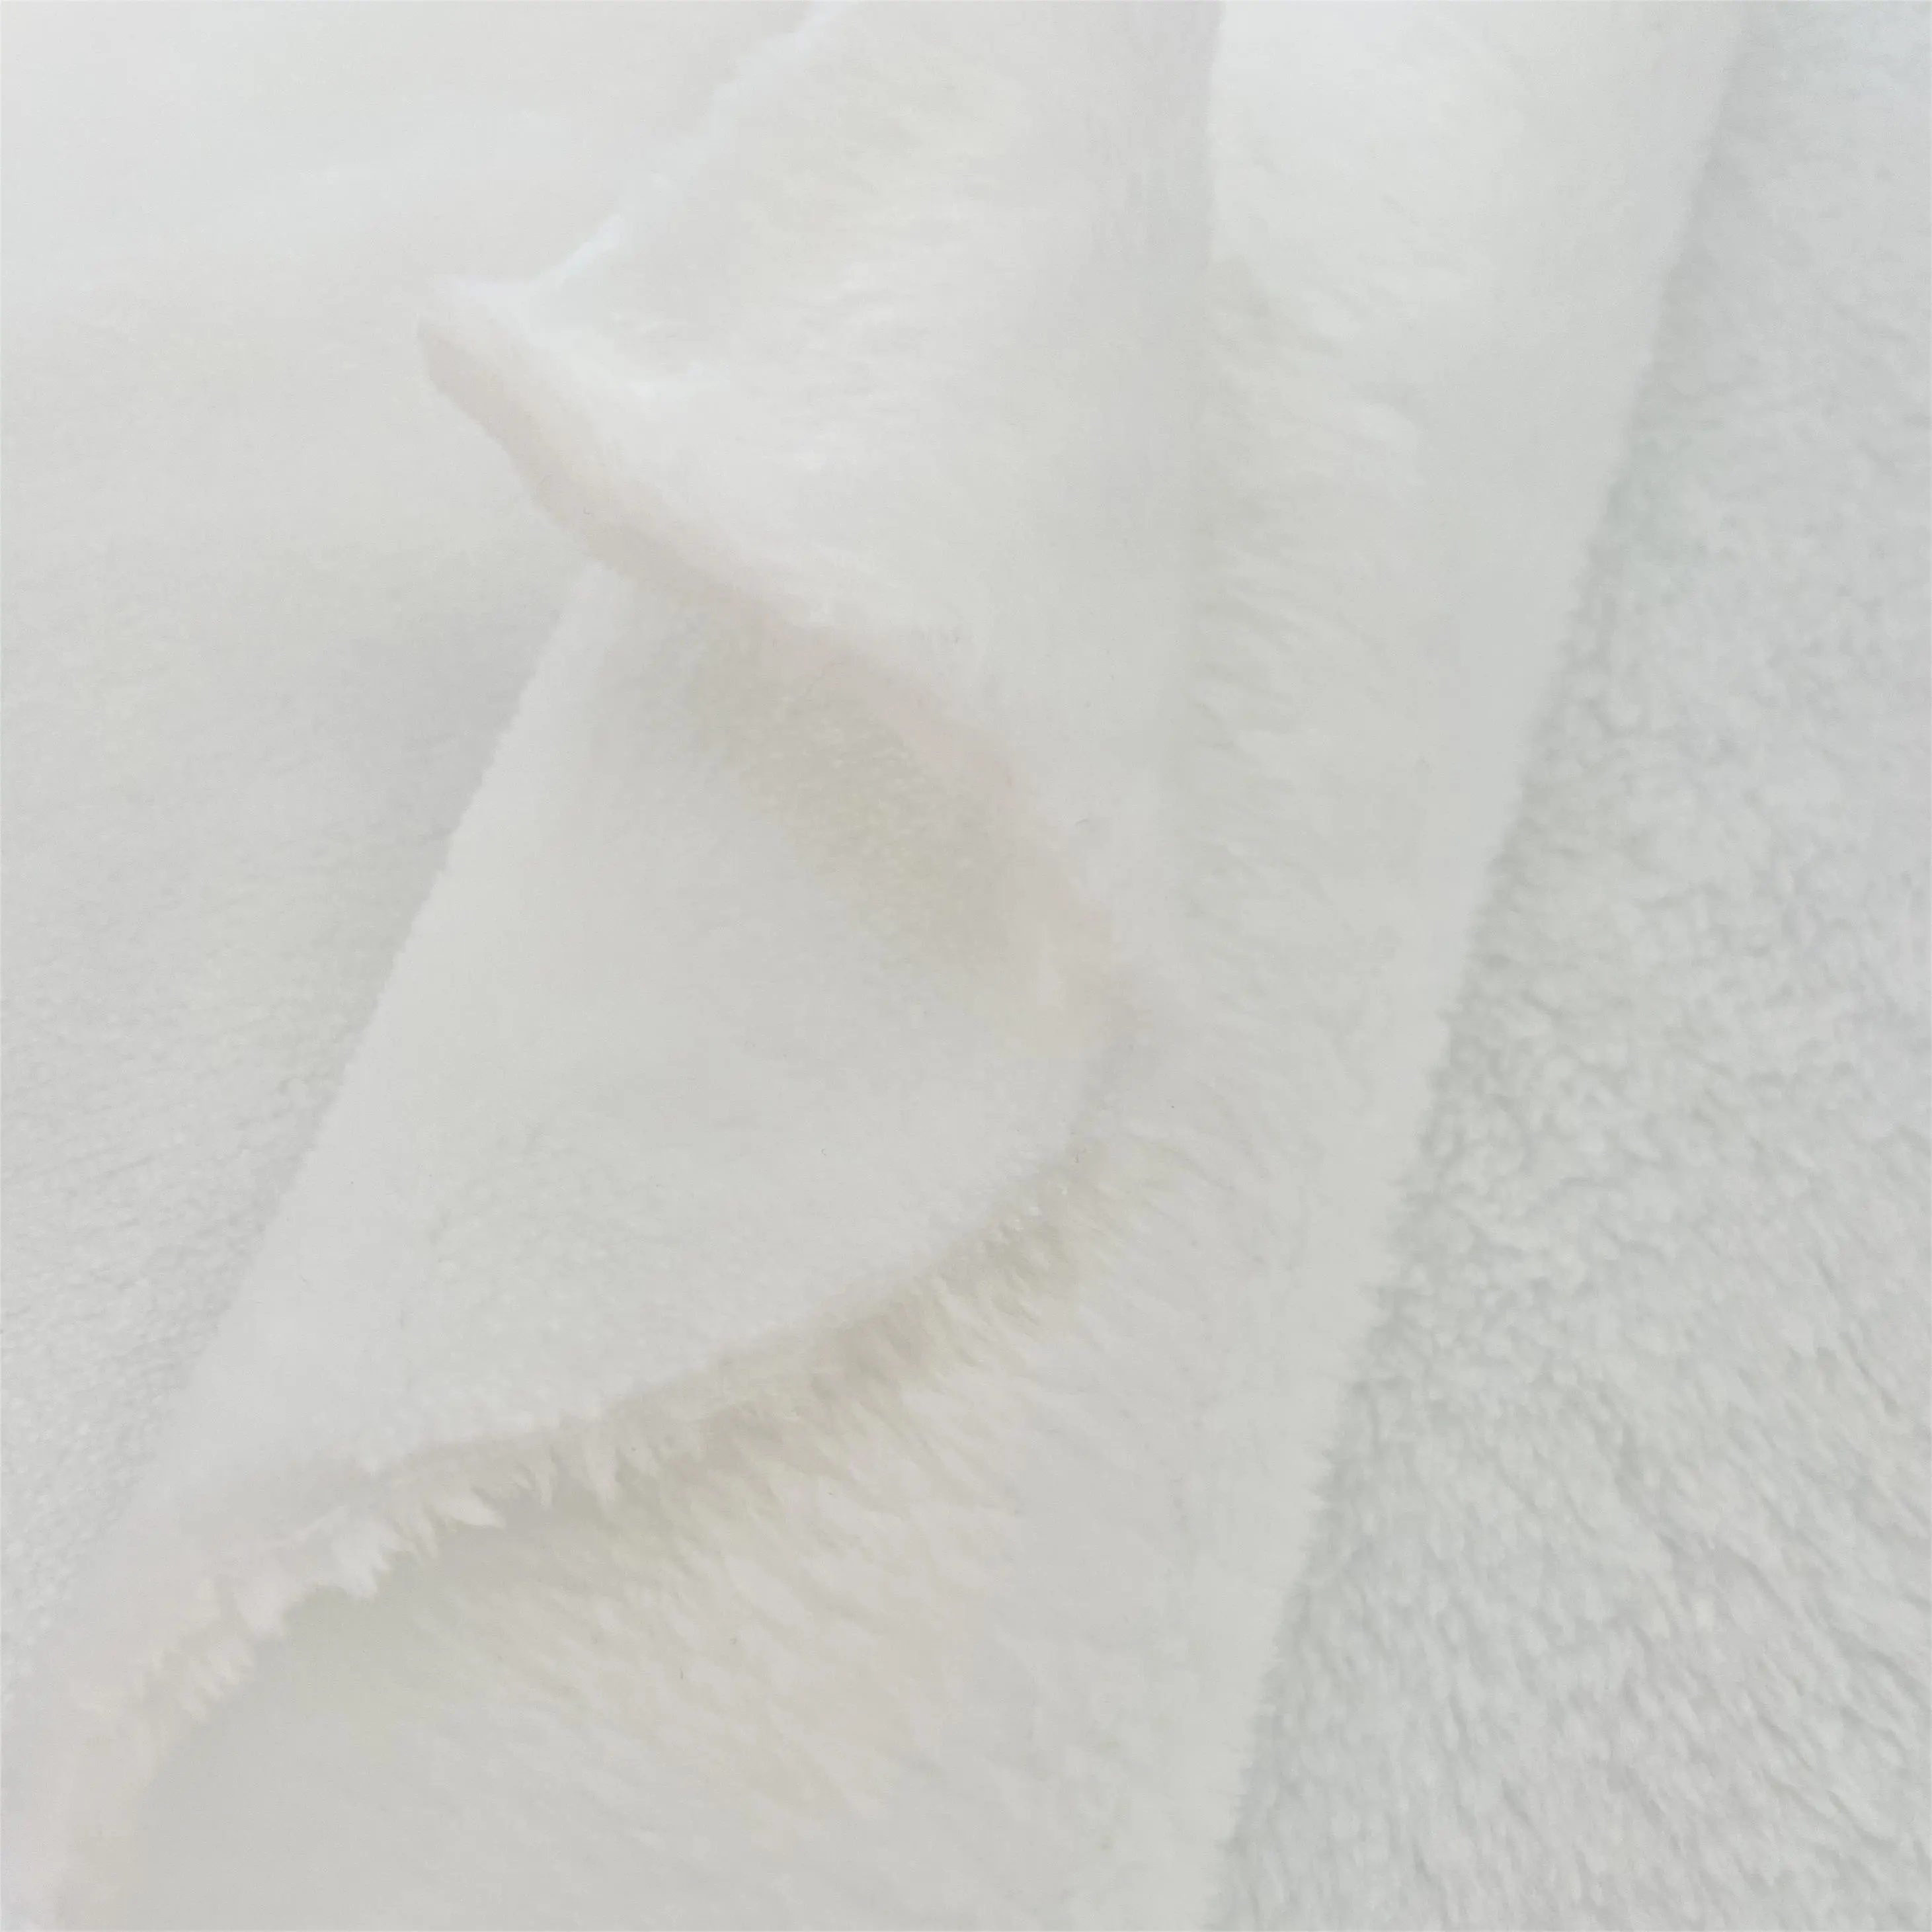 Haute qualité 100% polyester double face flanelle tissu doux pour la peau velours polaire peluche vêtements chauds textiles de maison